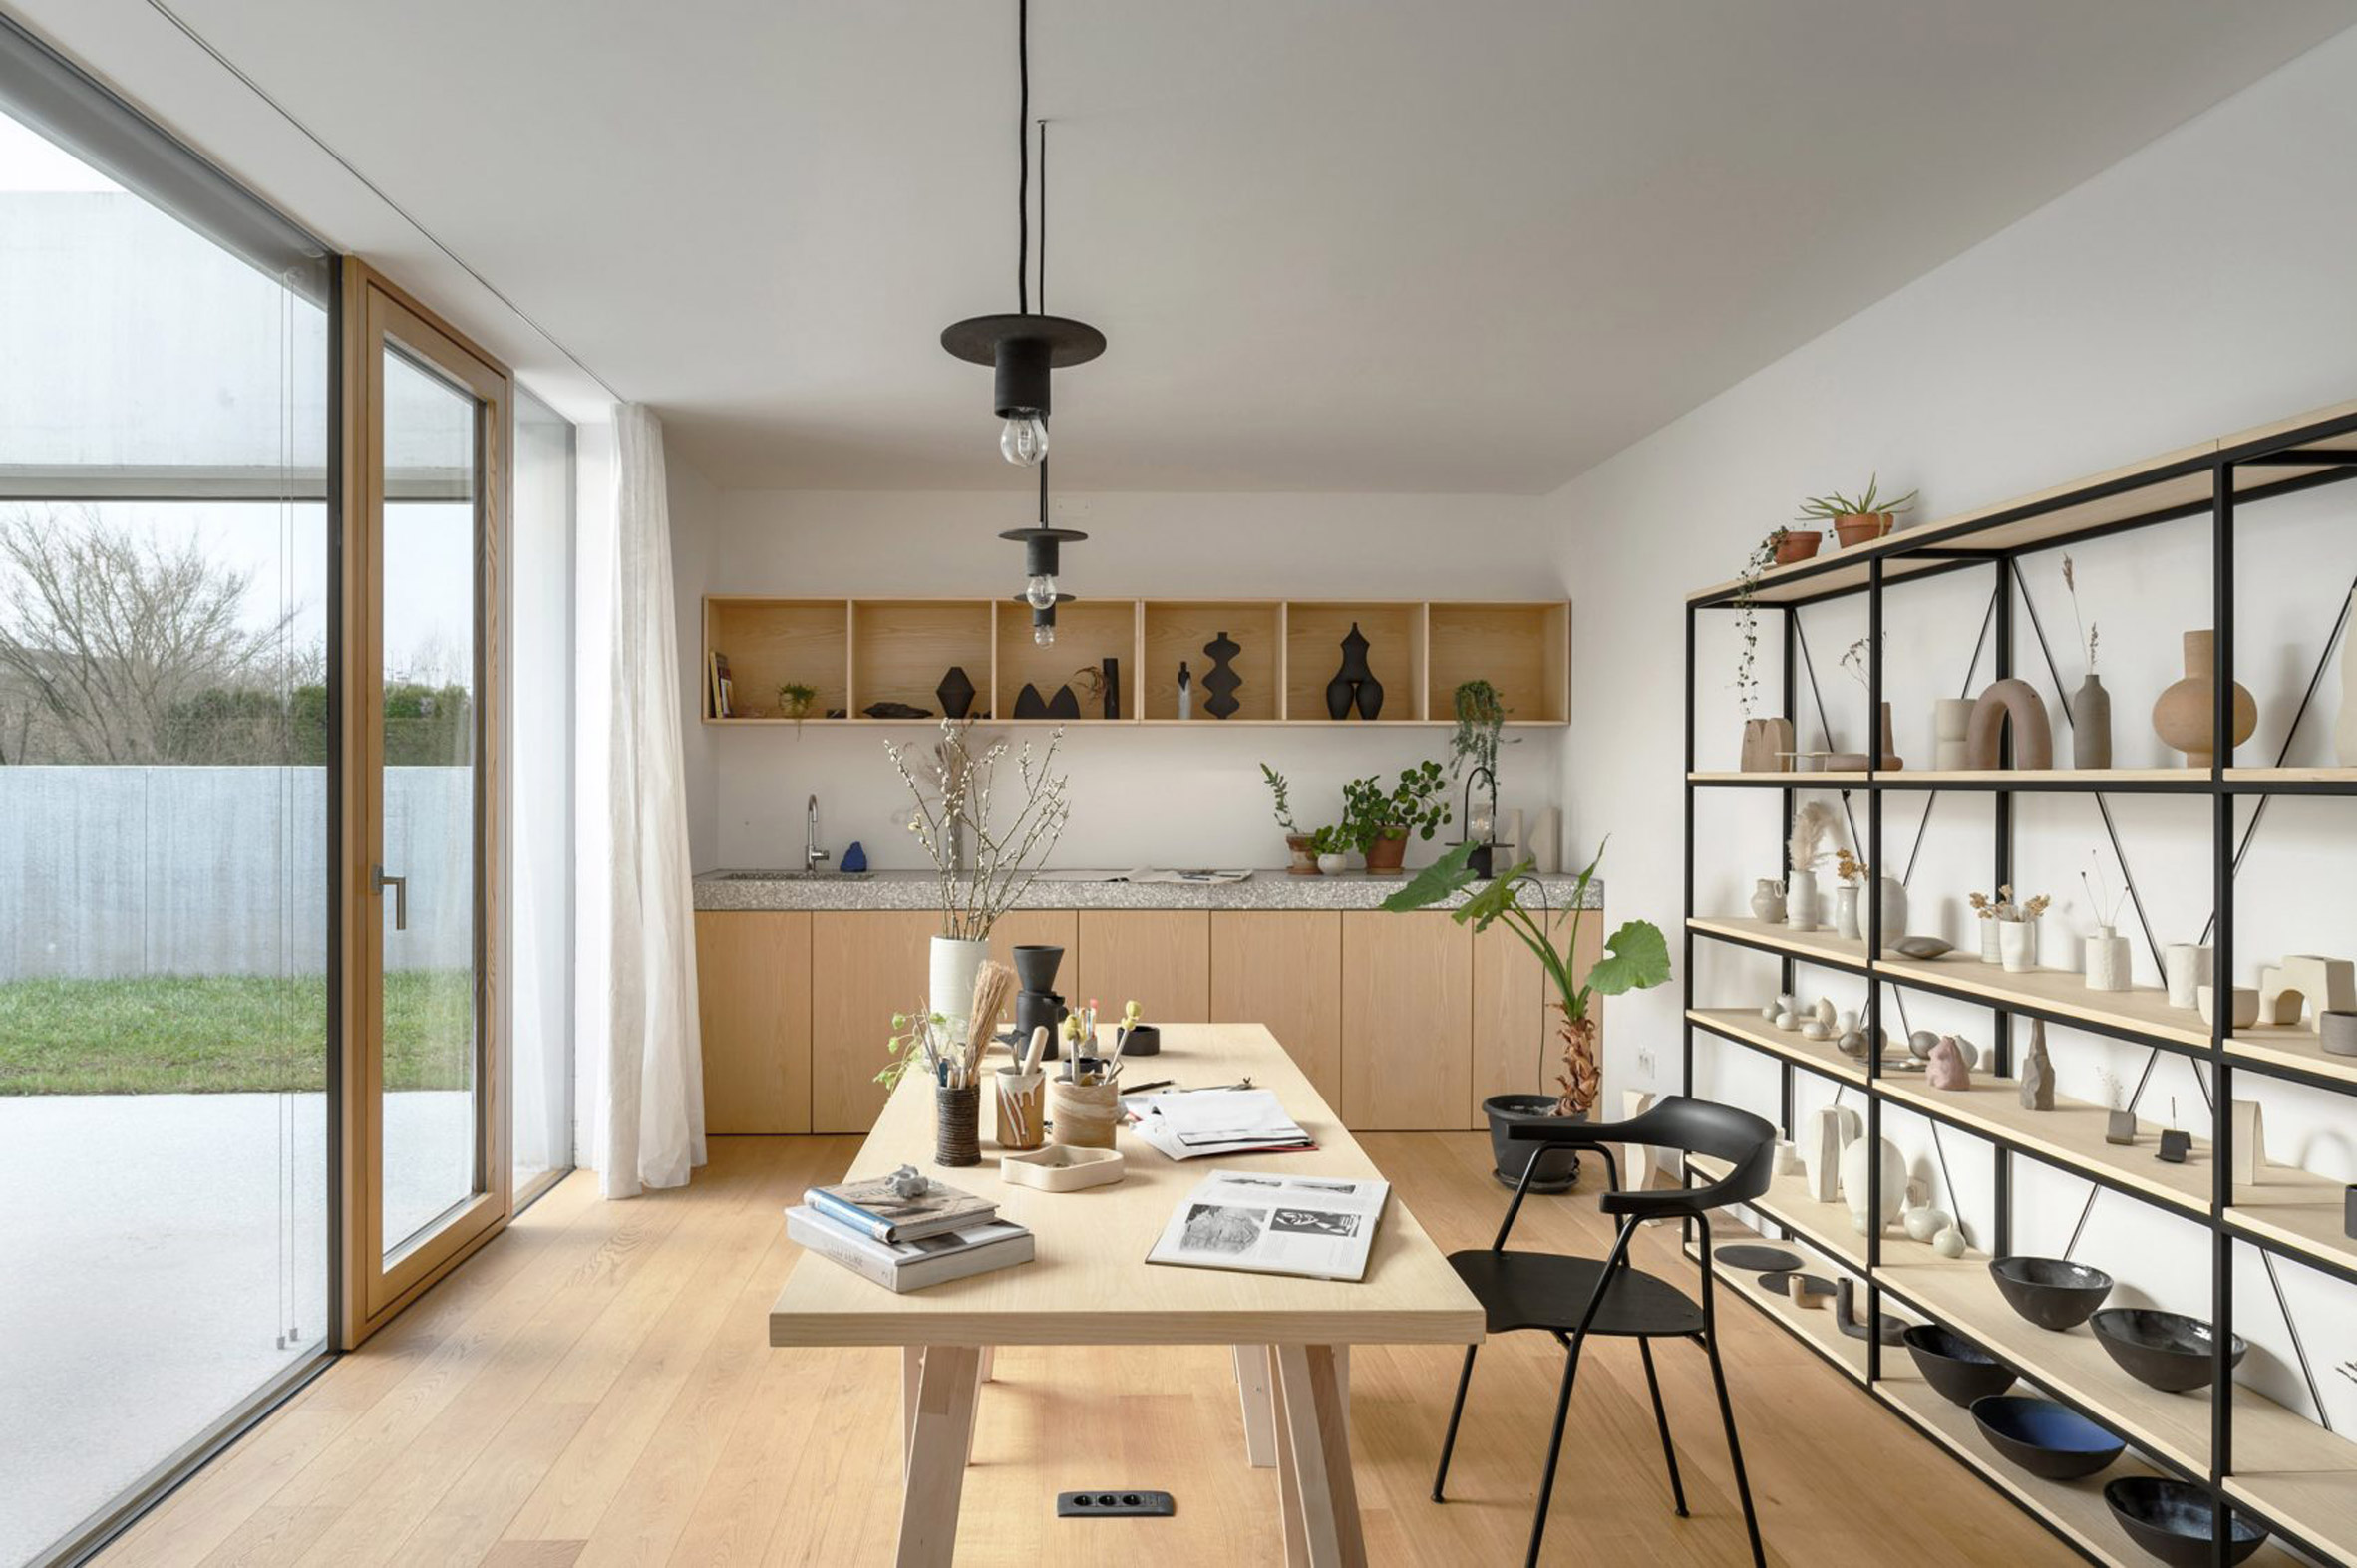 House for a Ceramic Designer by Arhitektura d.o.o